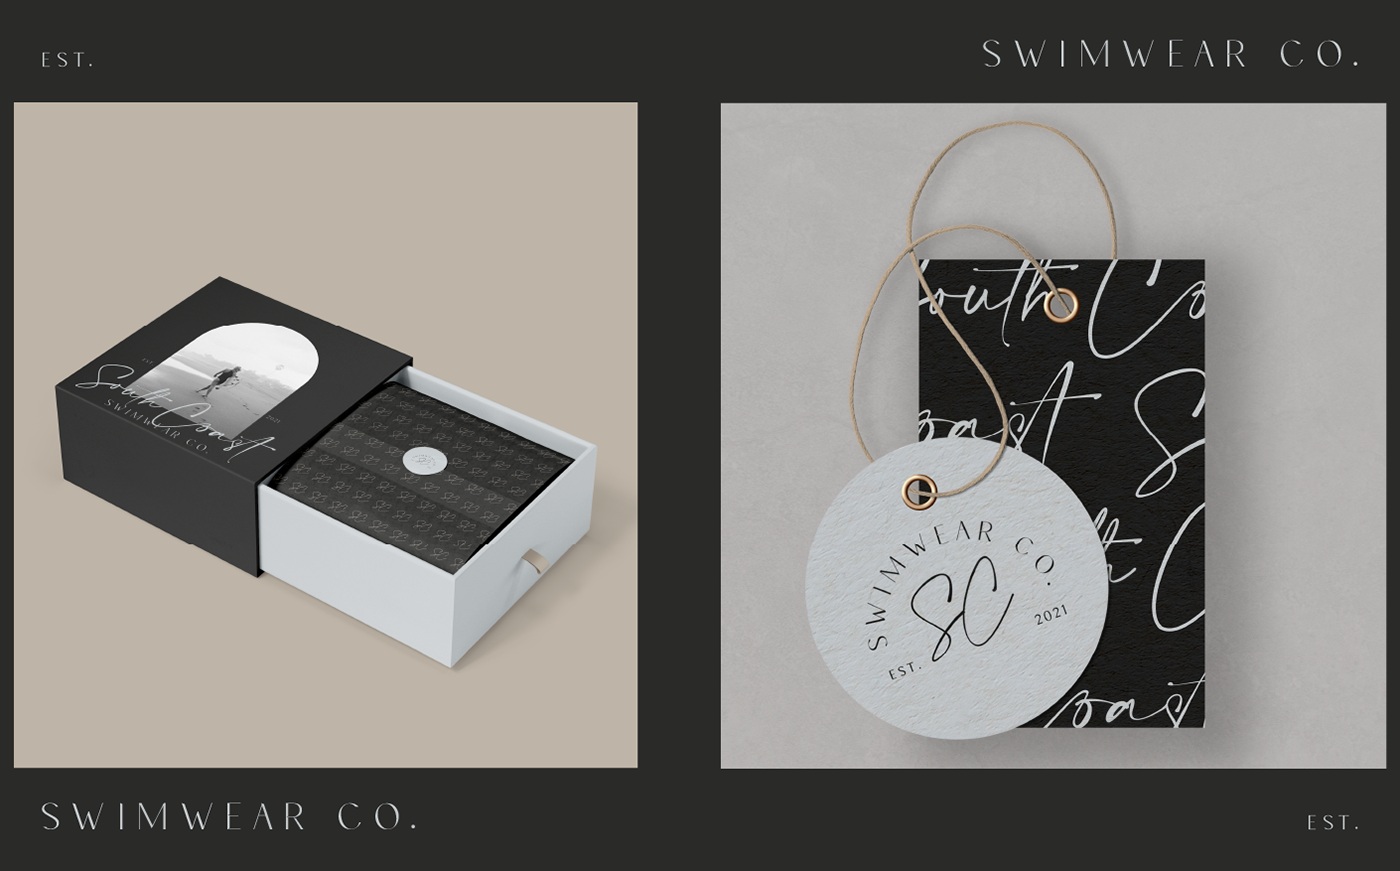 branding  graphicdesign logodesign Packaging packagingdesign passionproject Socialmedia swimwear swimwearbrand